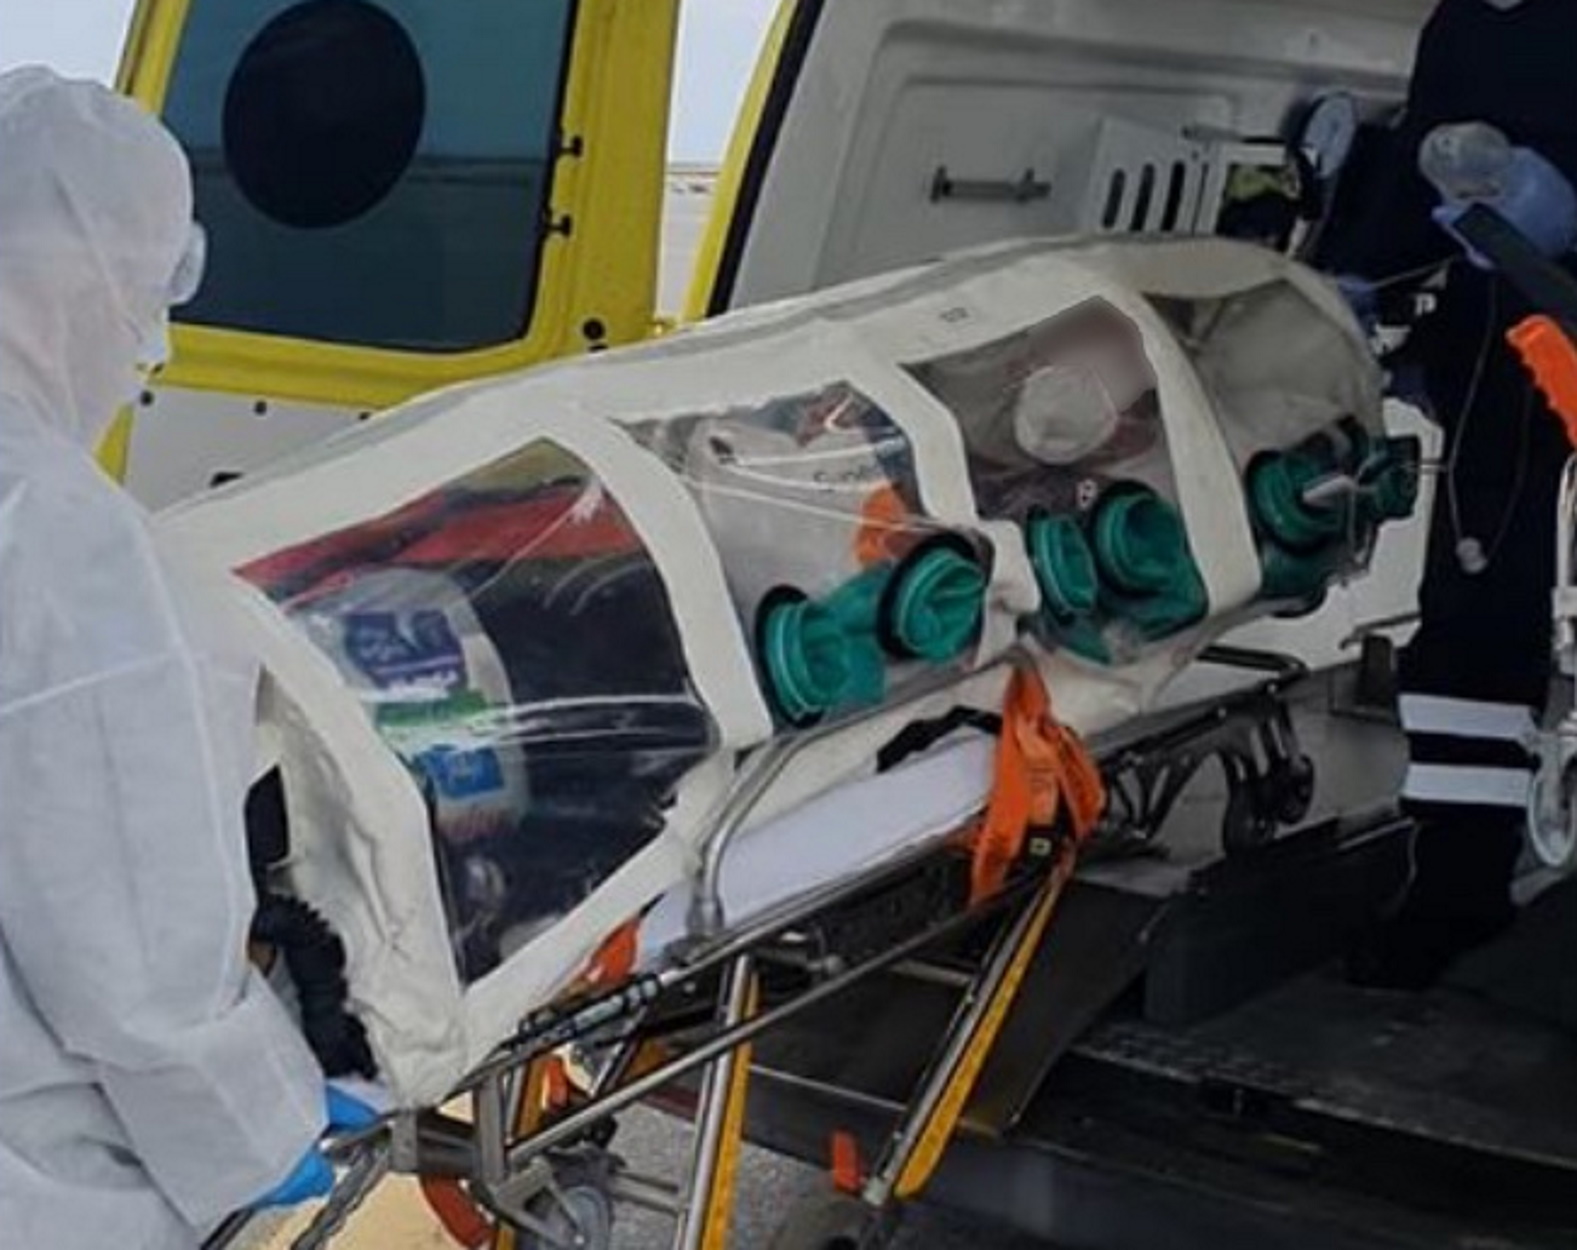 Κρήτη: Εντυπωσιακή αερομεταφορά ασθενούς μέσα σε ειδική κάψουλα αρνητικής πίεσης (pics, video)